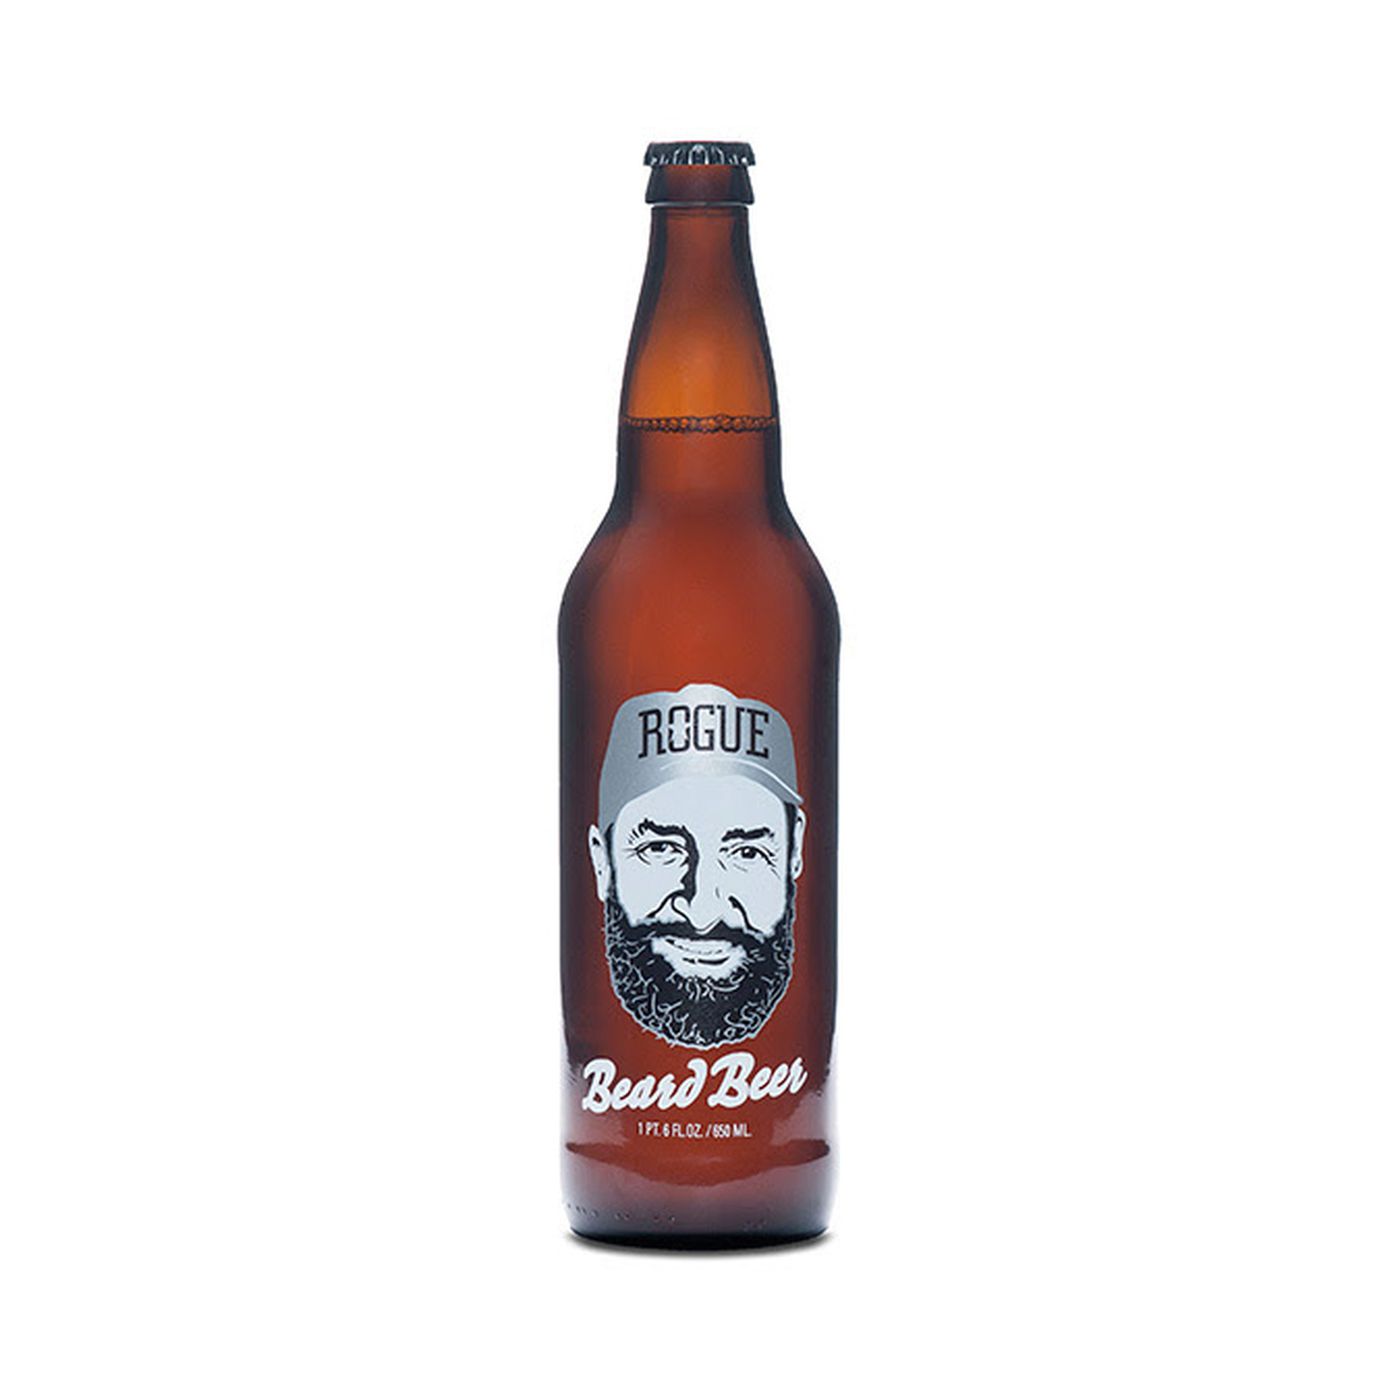 Rogue Beard Beer 